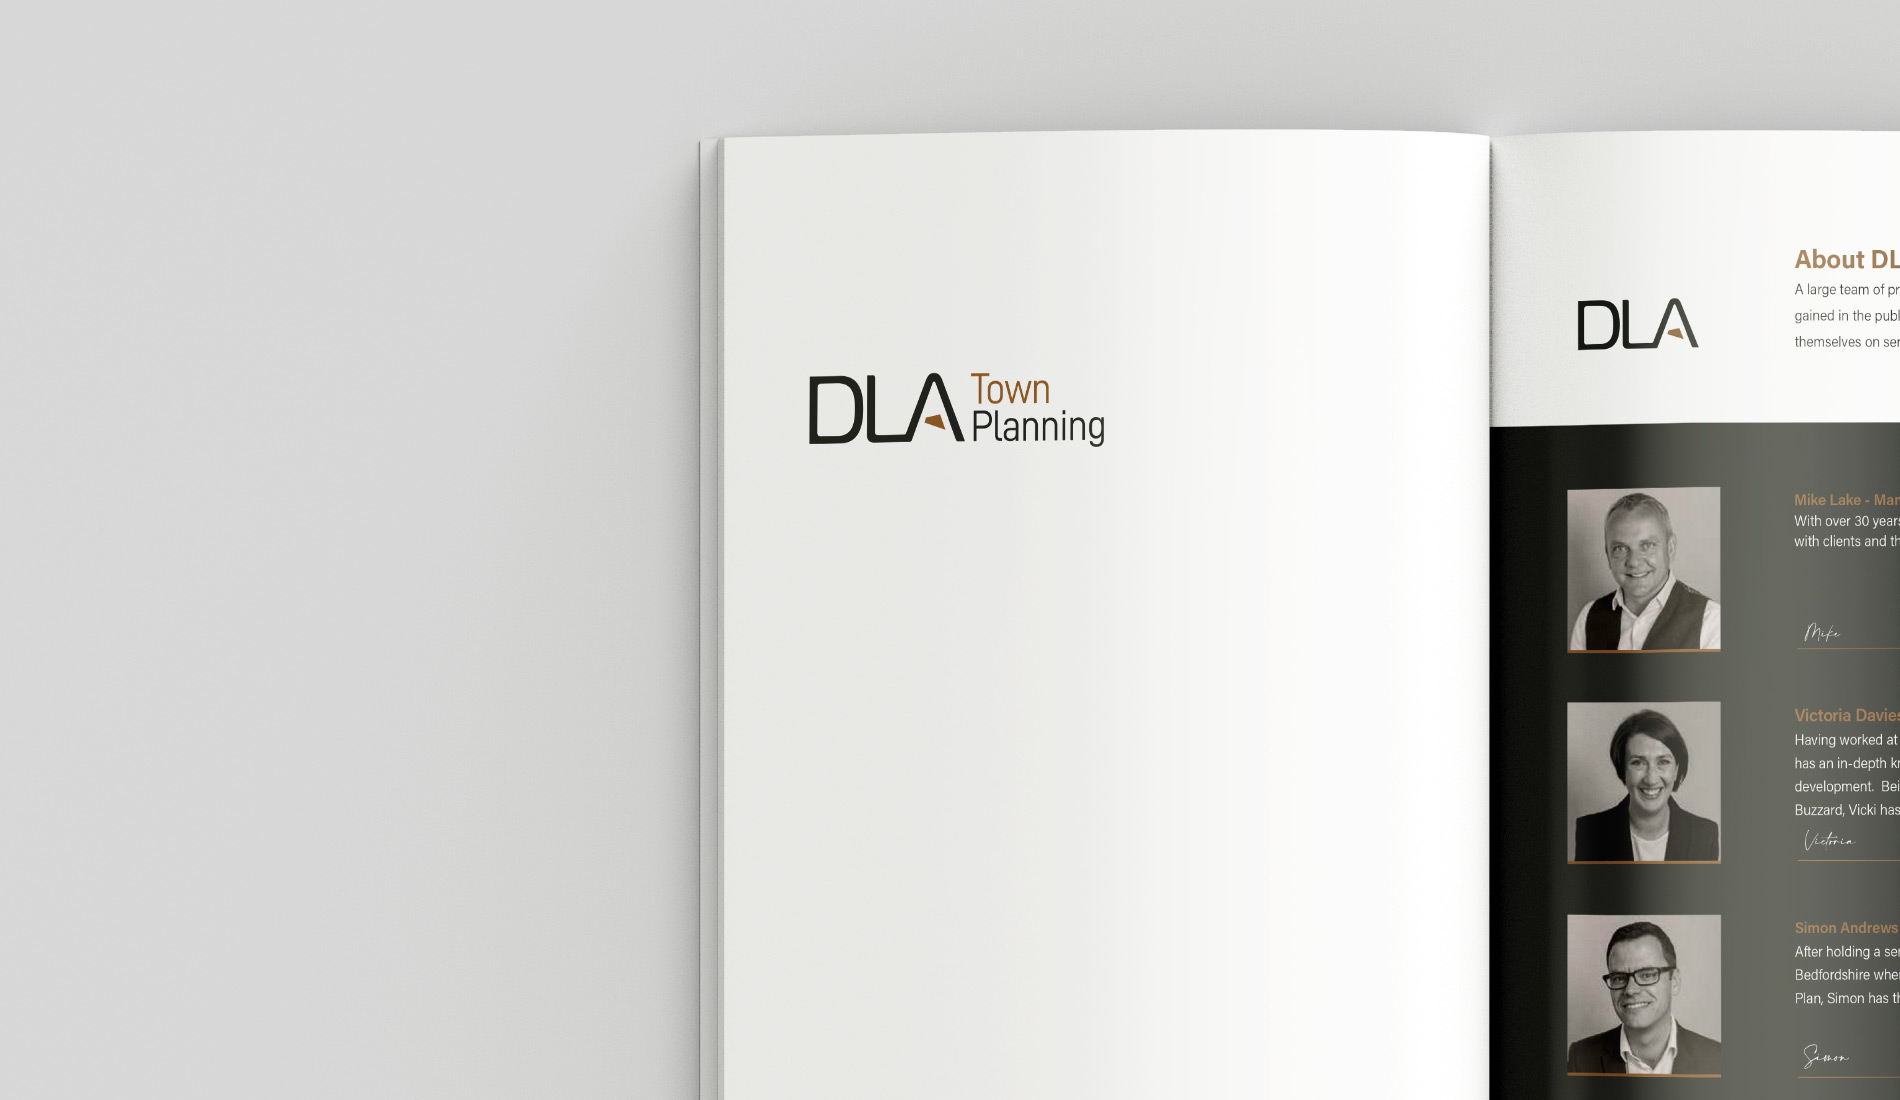 DLA Town Planning Brand Design